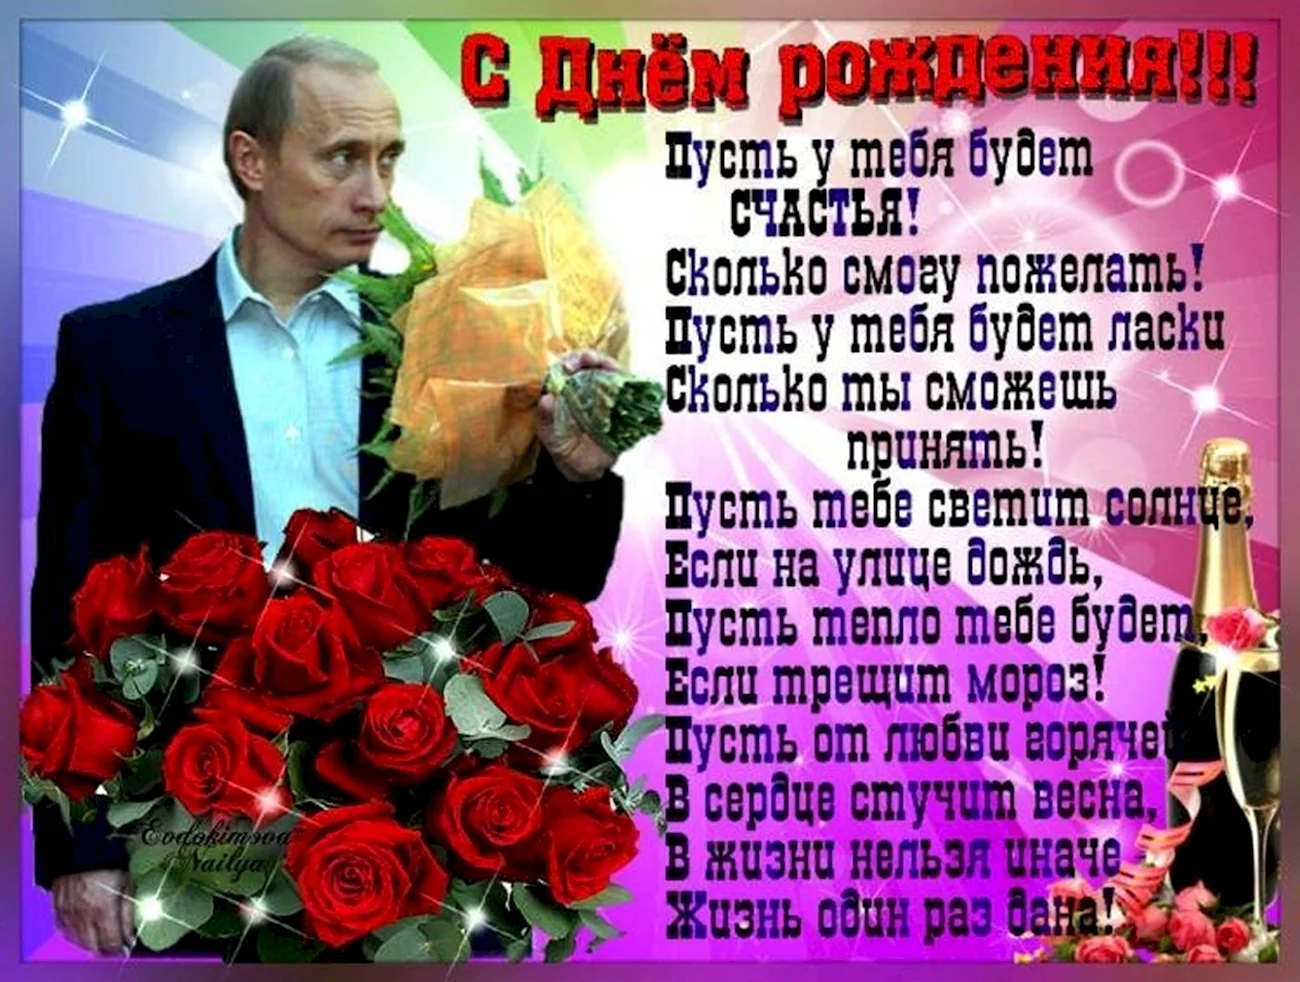 Путин поздравление с днем рождения. Красивая картинка